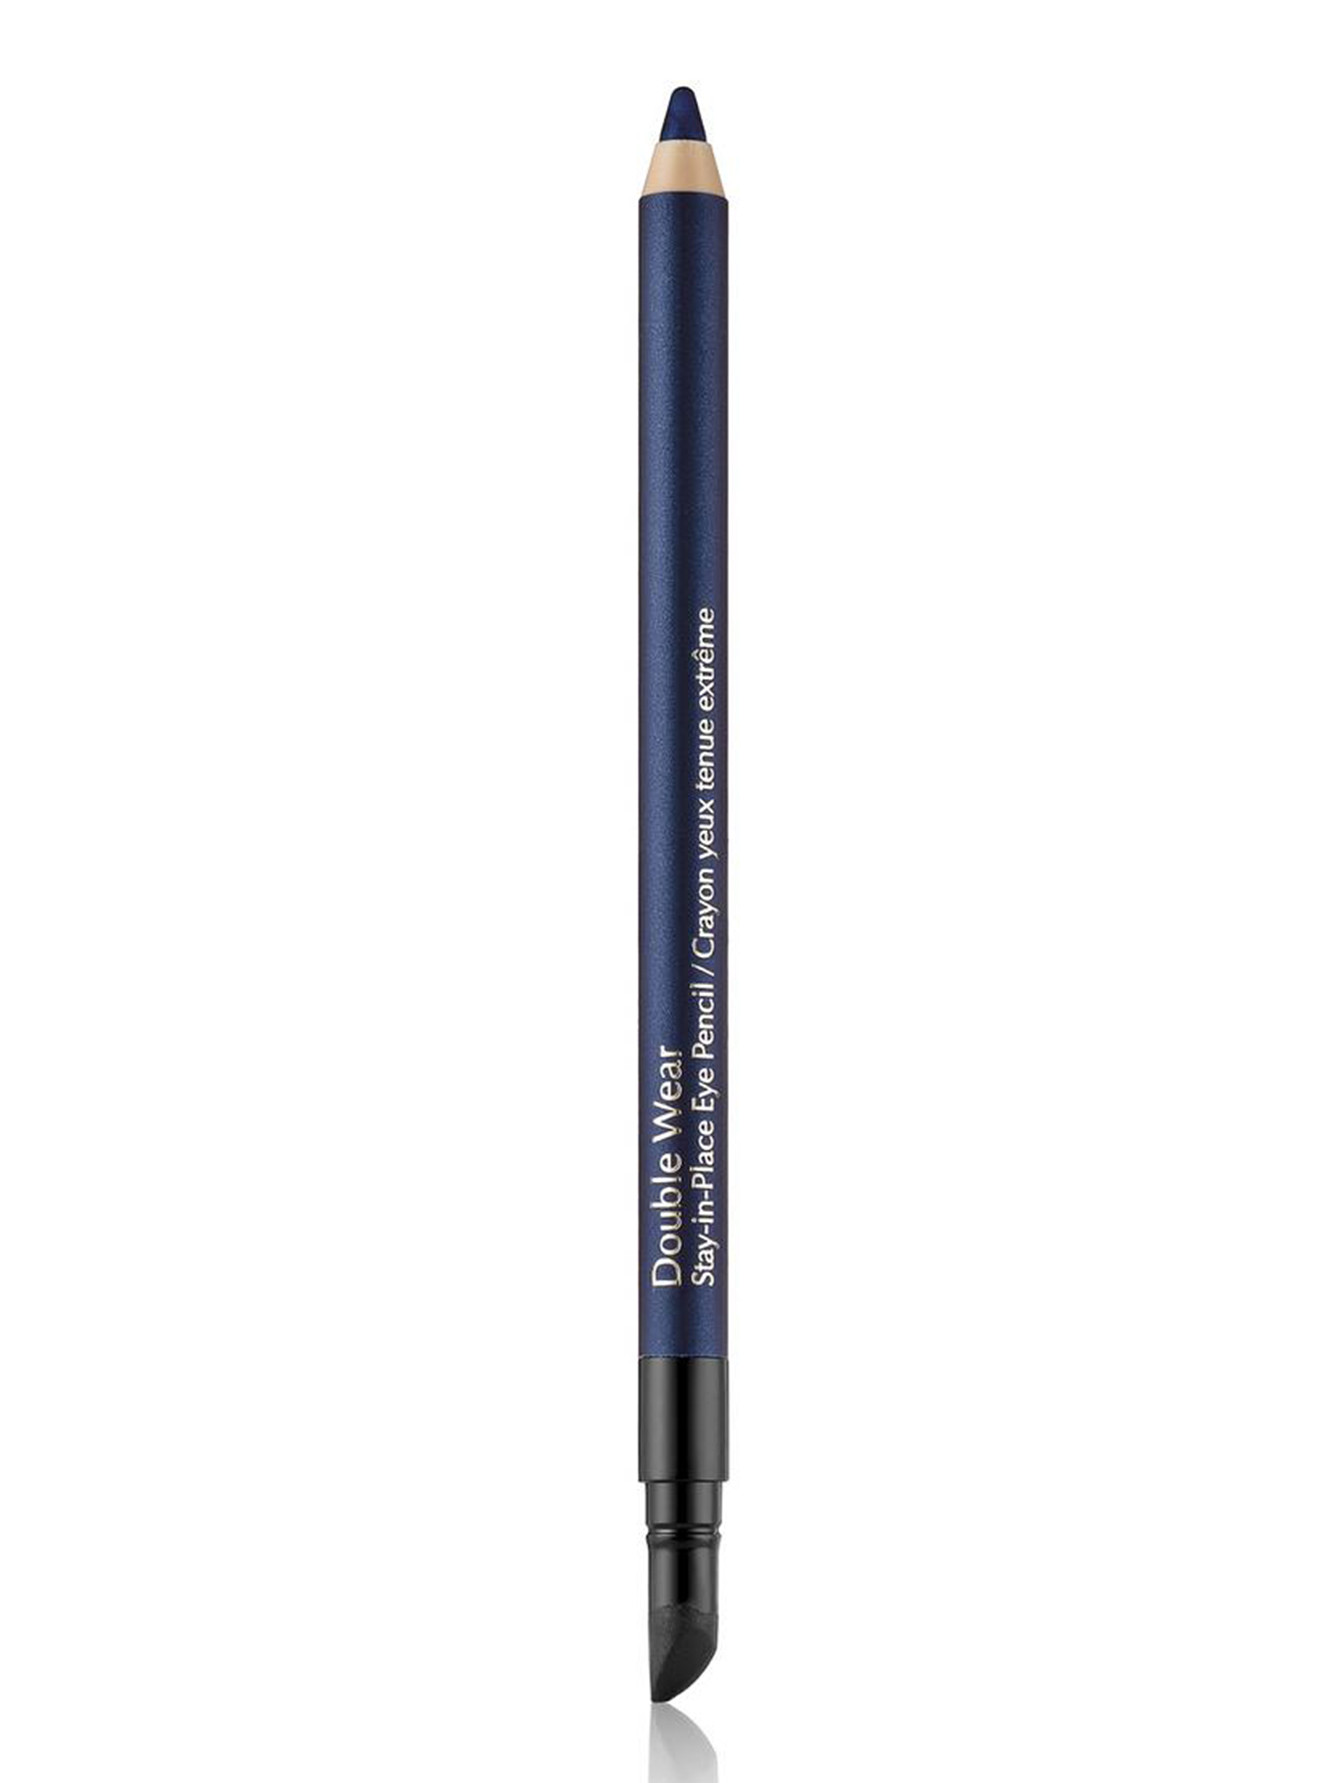  Карандаш для глаз - Sapphire, Eye Pencil - Общий вид